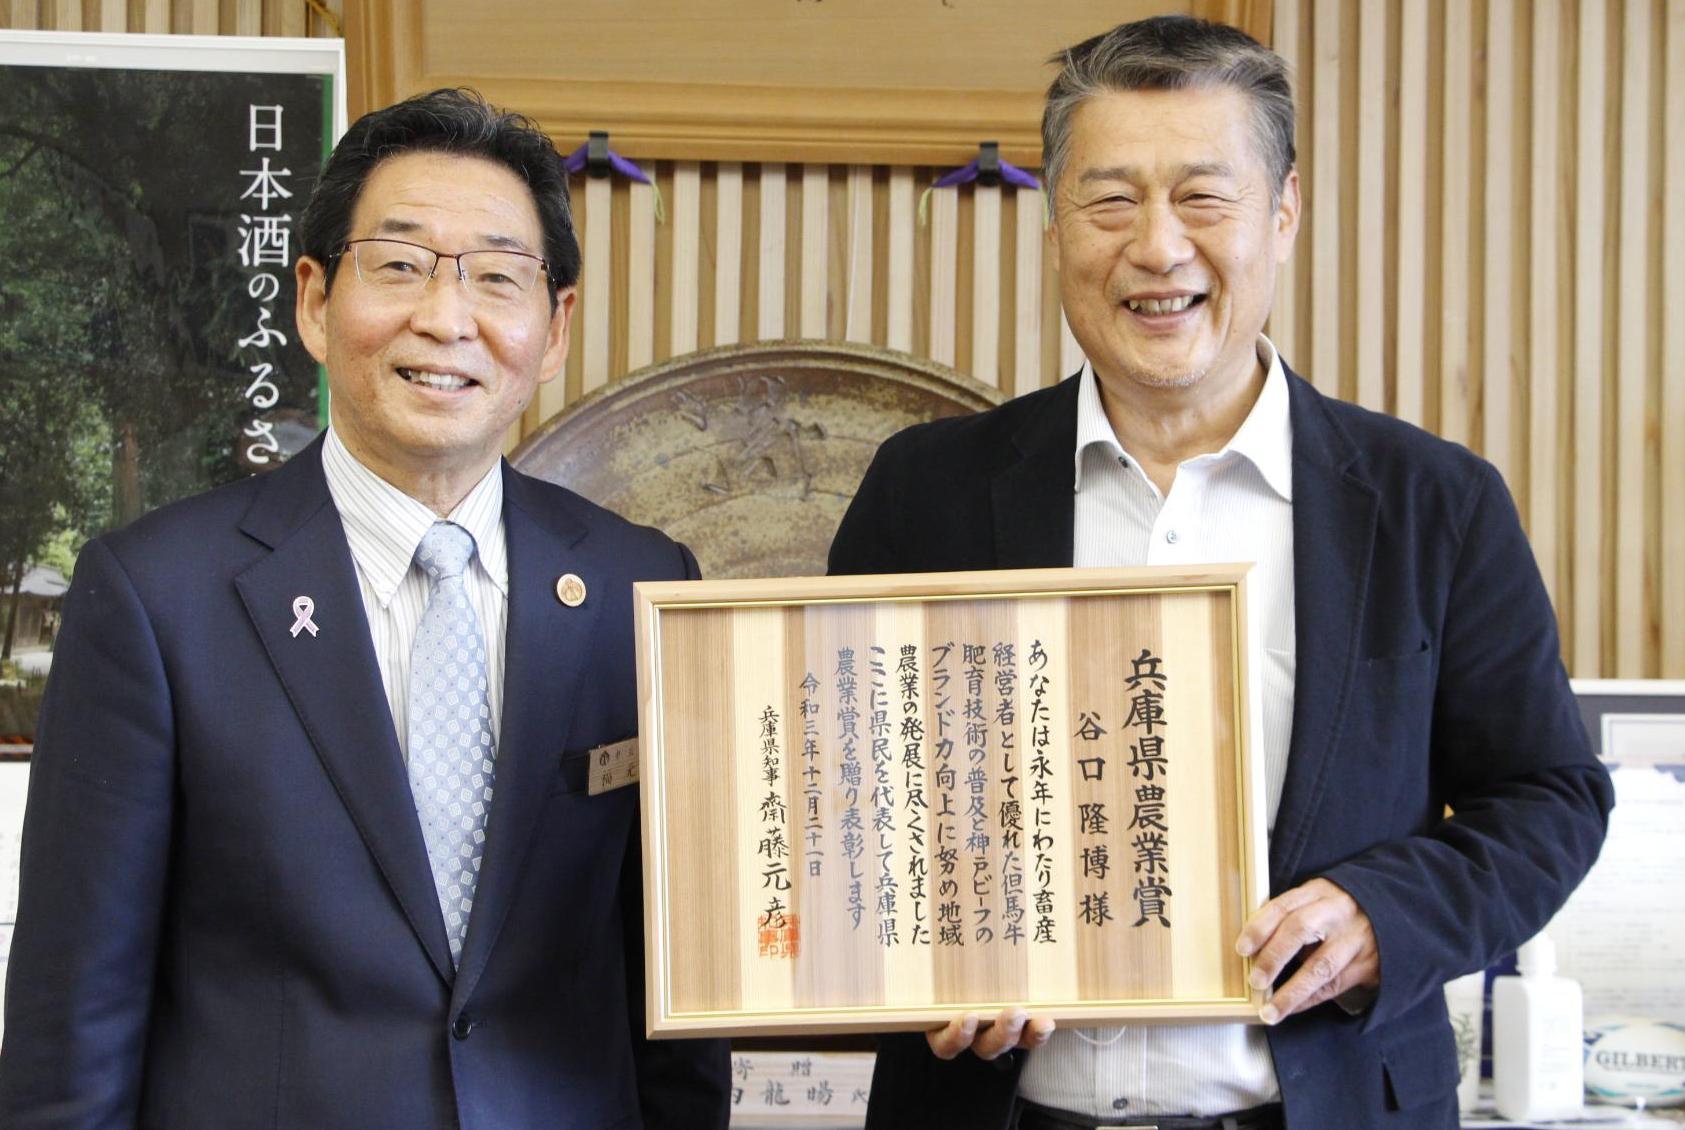 兵庫県農業賞の症状を手に笑顔を見せる山崎町の谷口隆博さんと宍粟市長が並んで微笑んでいる写真